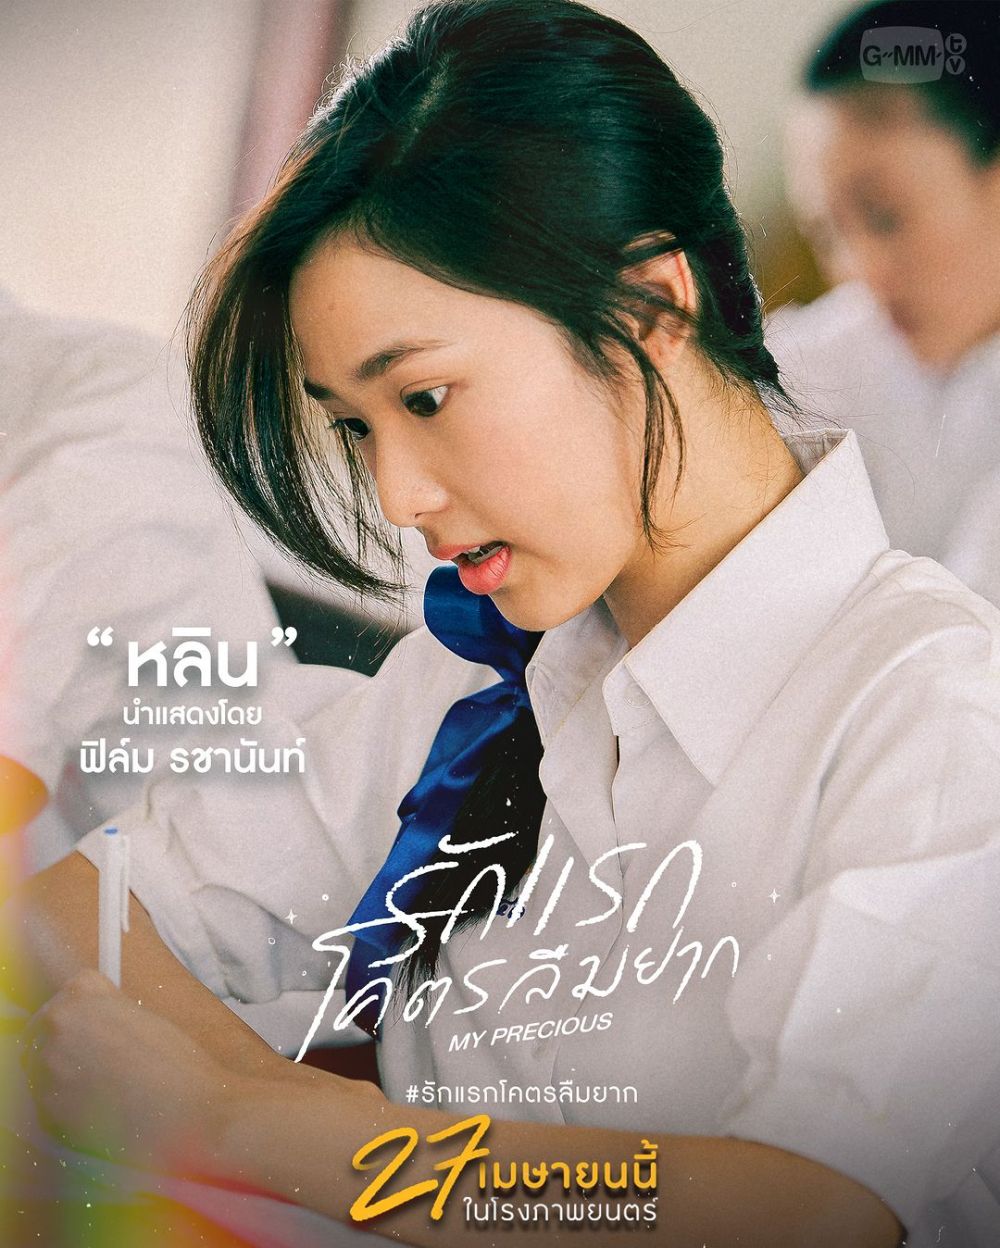 7 Pemeran Film Thailand My Precious, Segera Tayang di Bioskop!